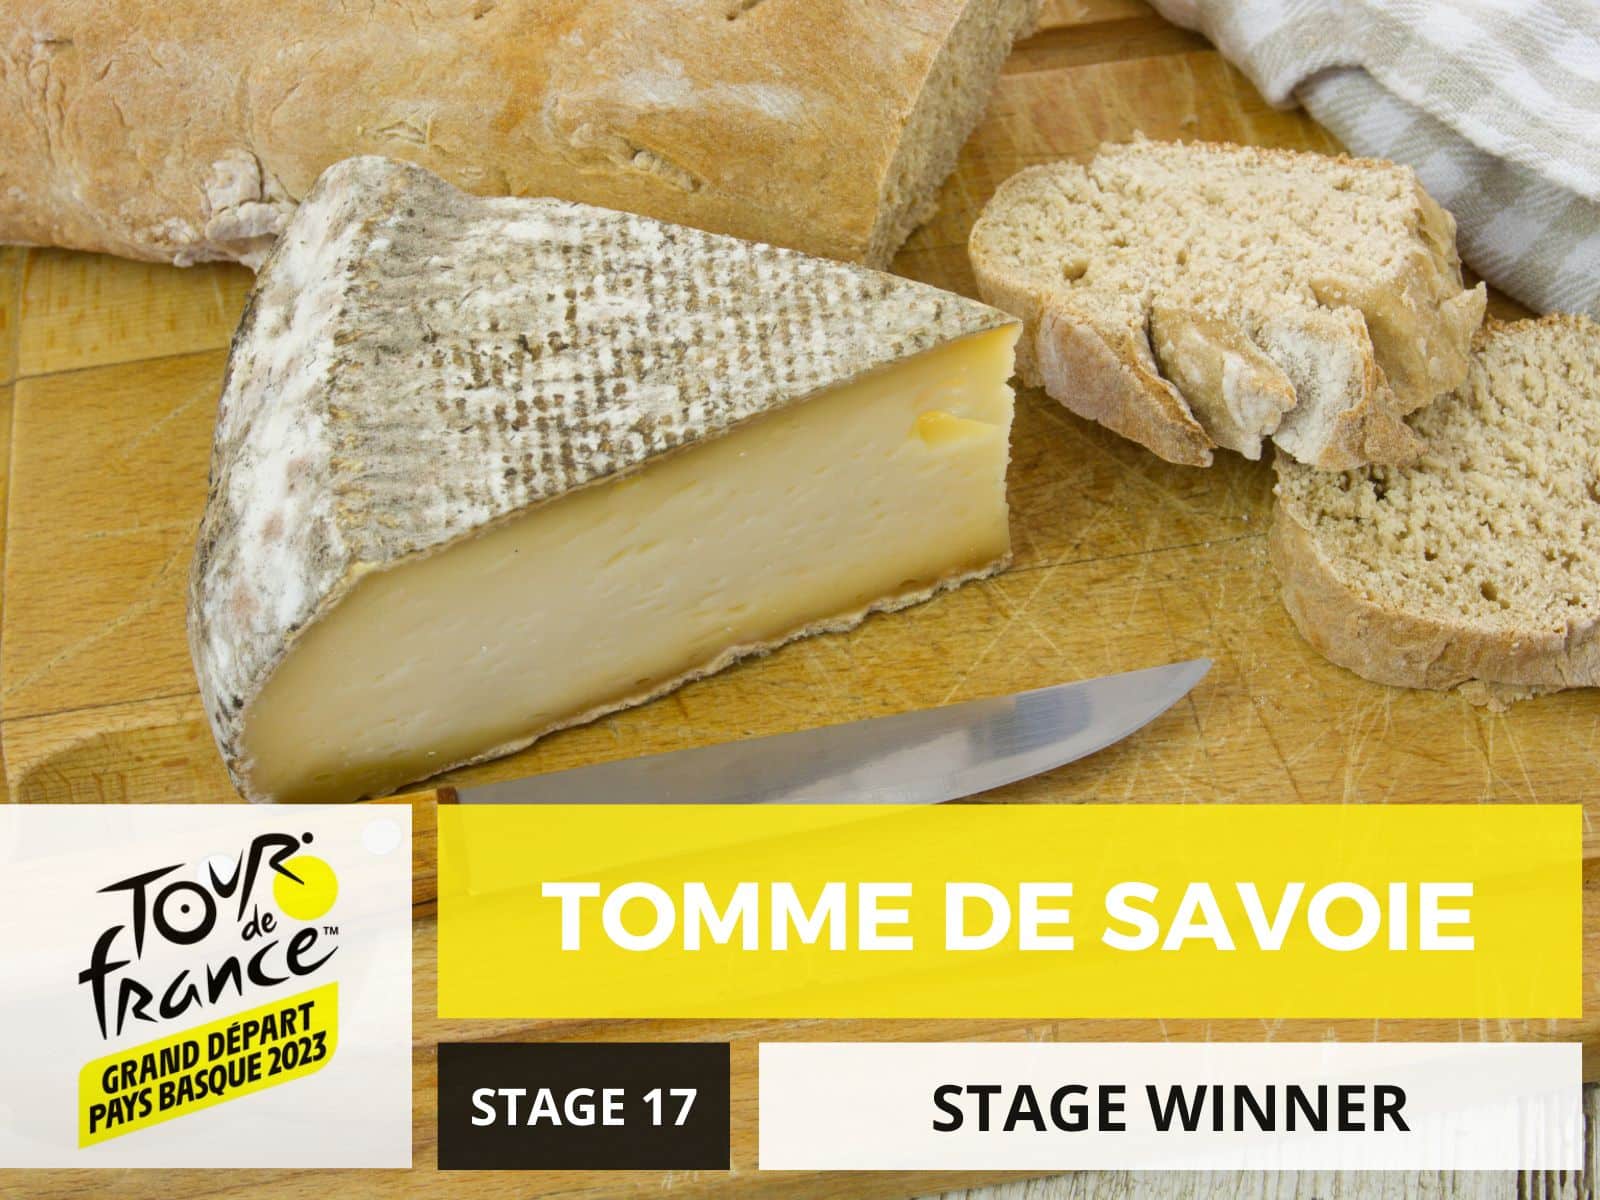 Tdf 23 Stage 17 Tomme de Savoie